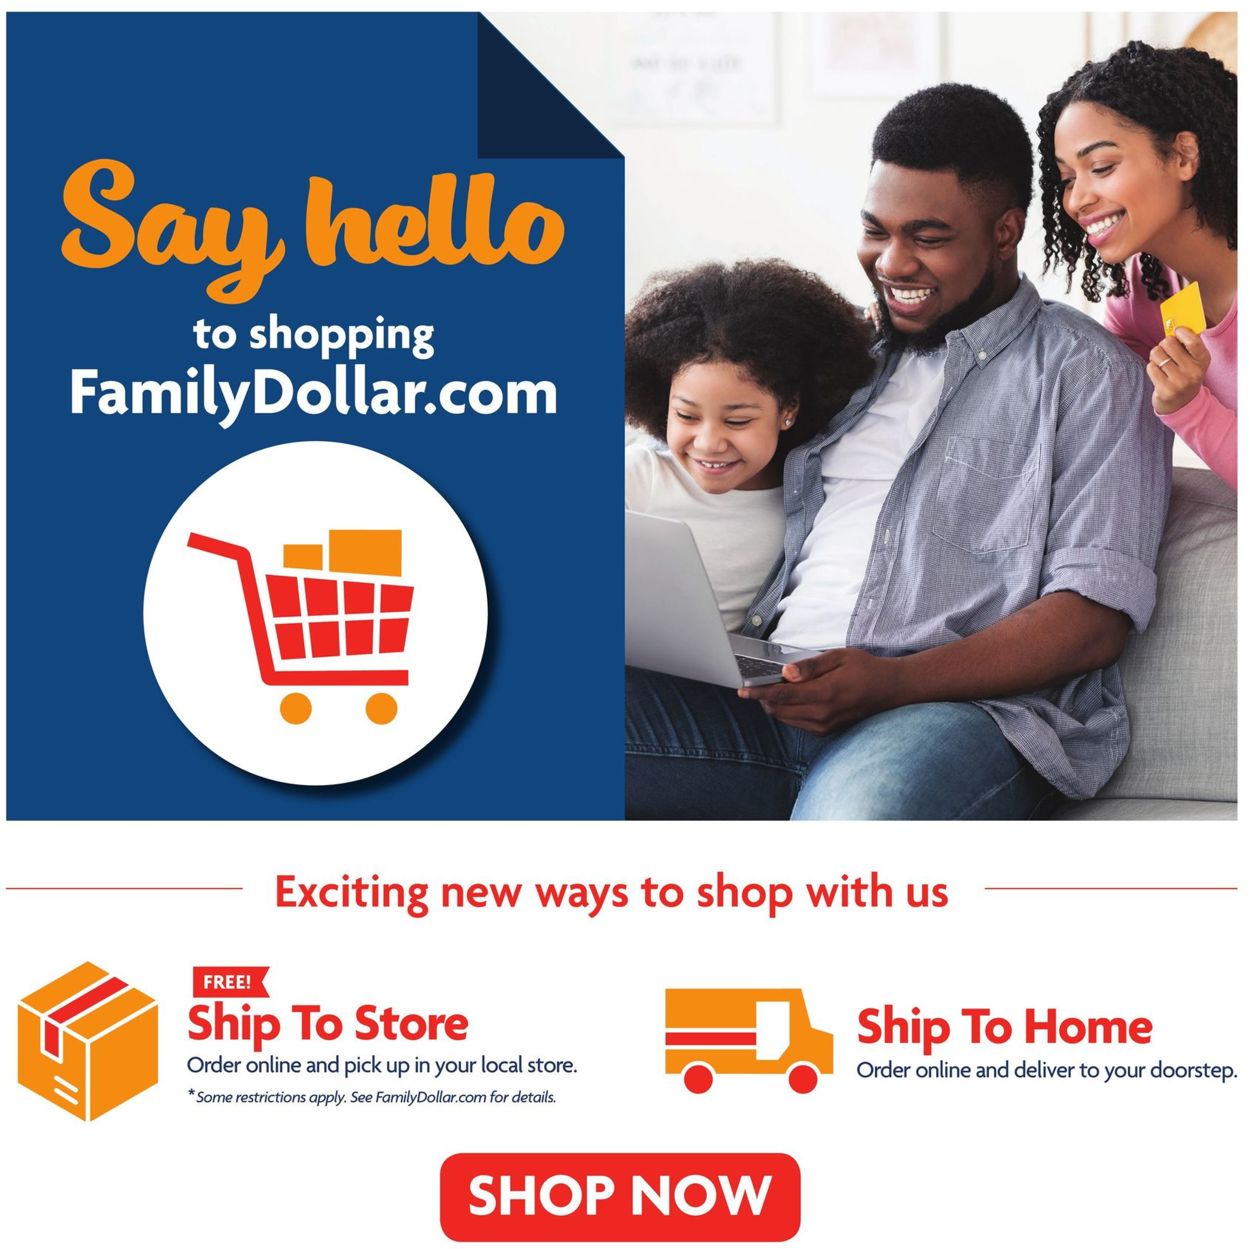 Catalogue Family Dollar Holiday 2020 from 11/15/2020